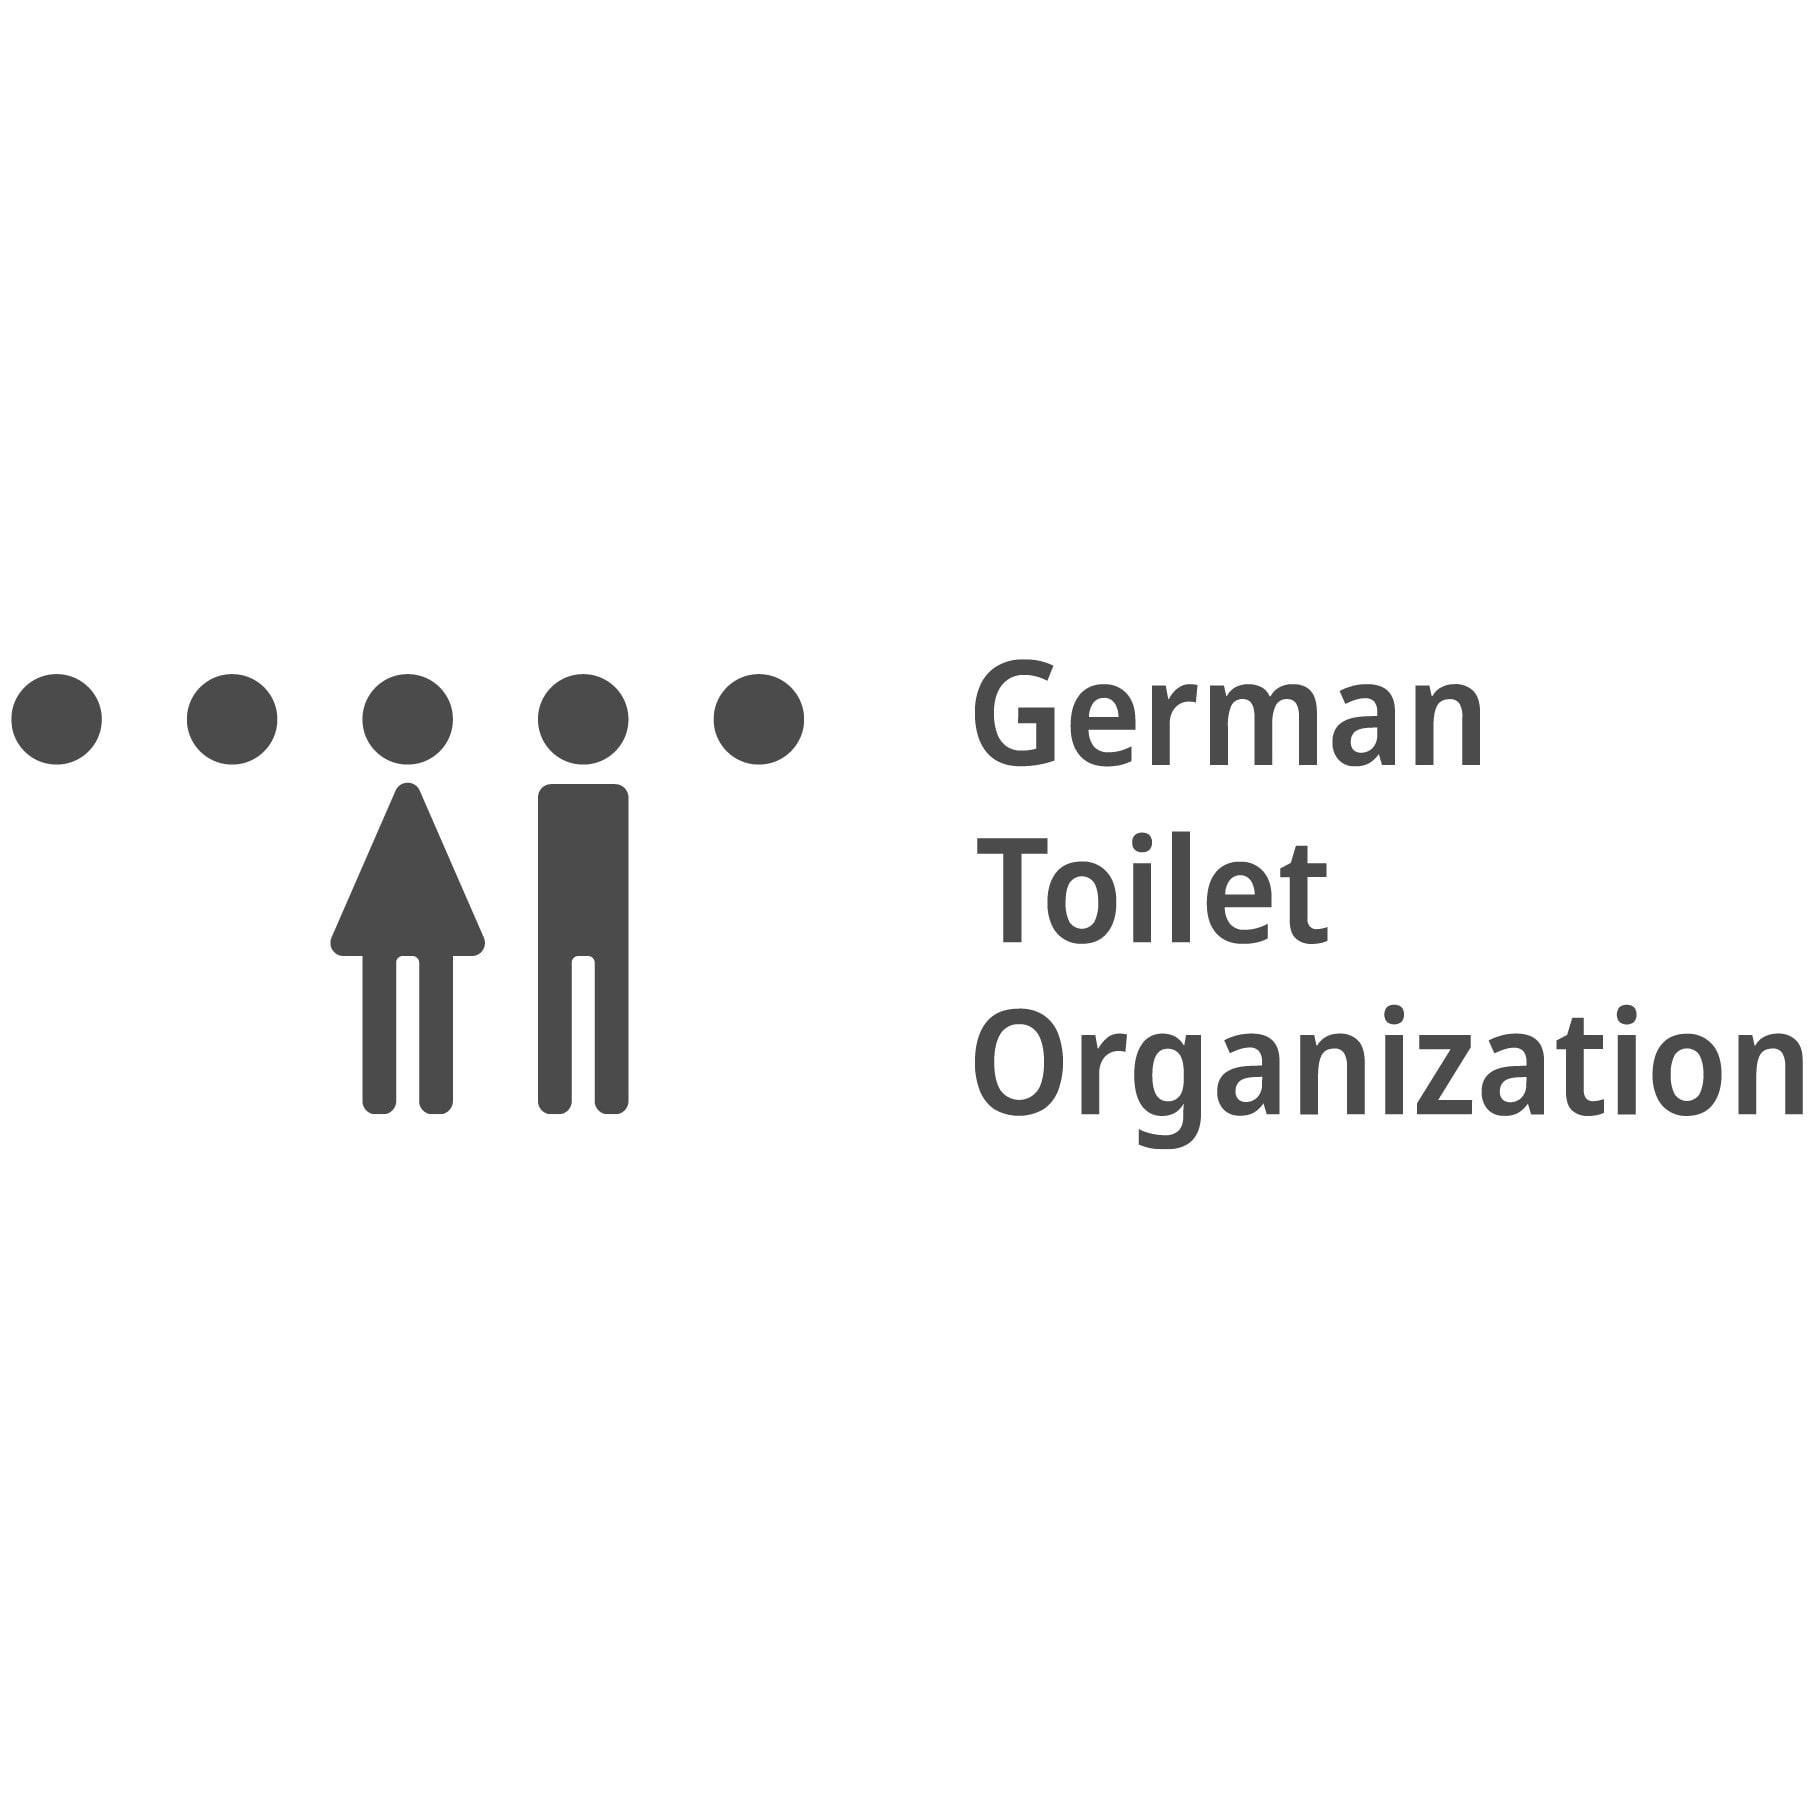 German Toilet Organization logo